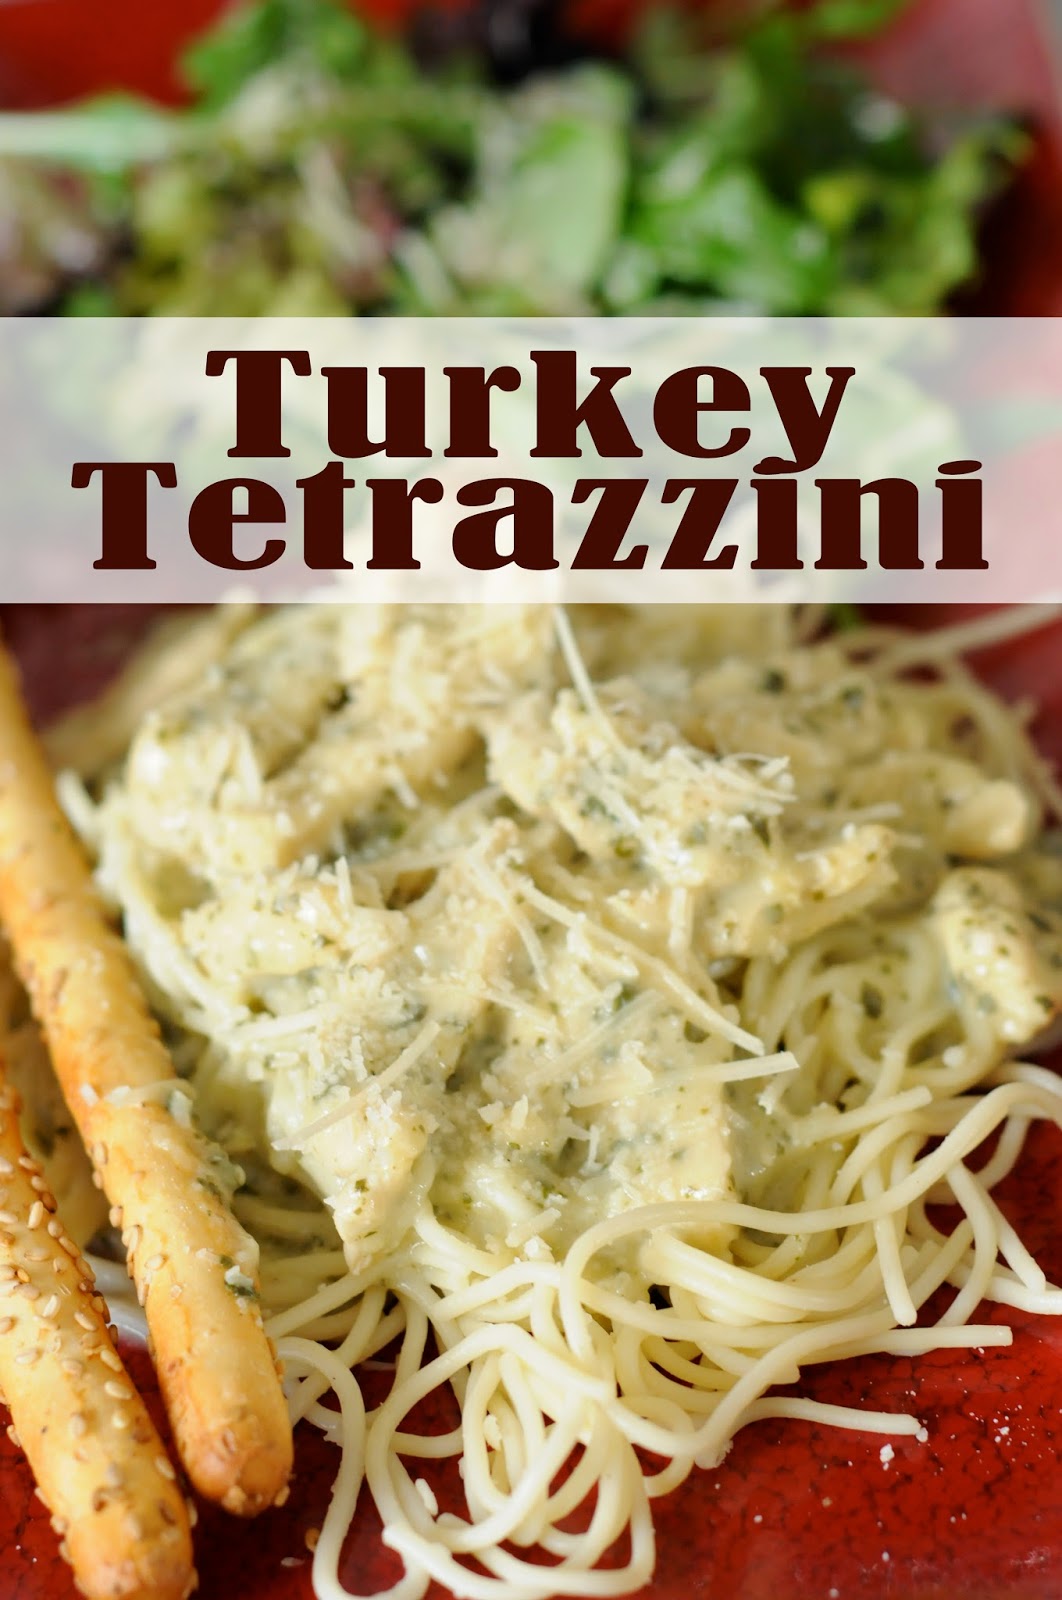 Heartbeat for Life Turkey Tetrazzini